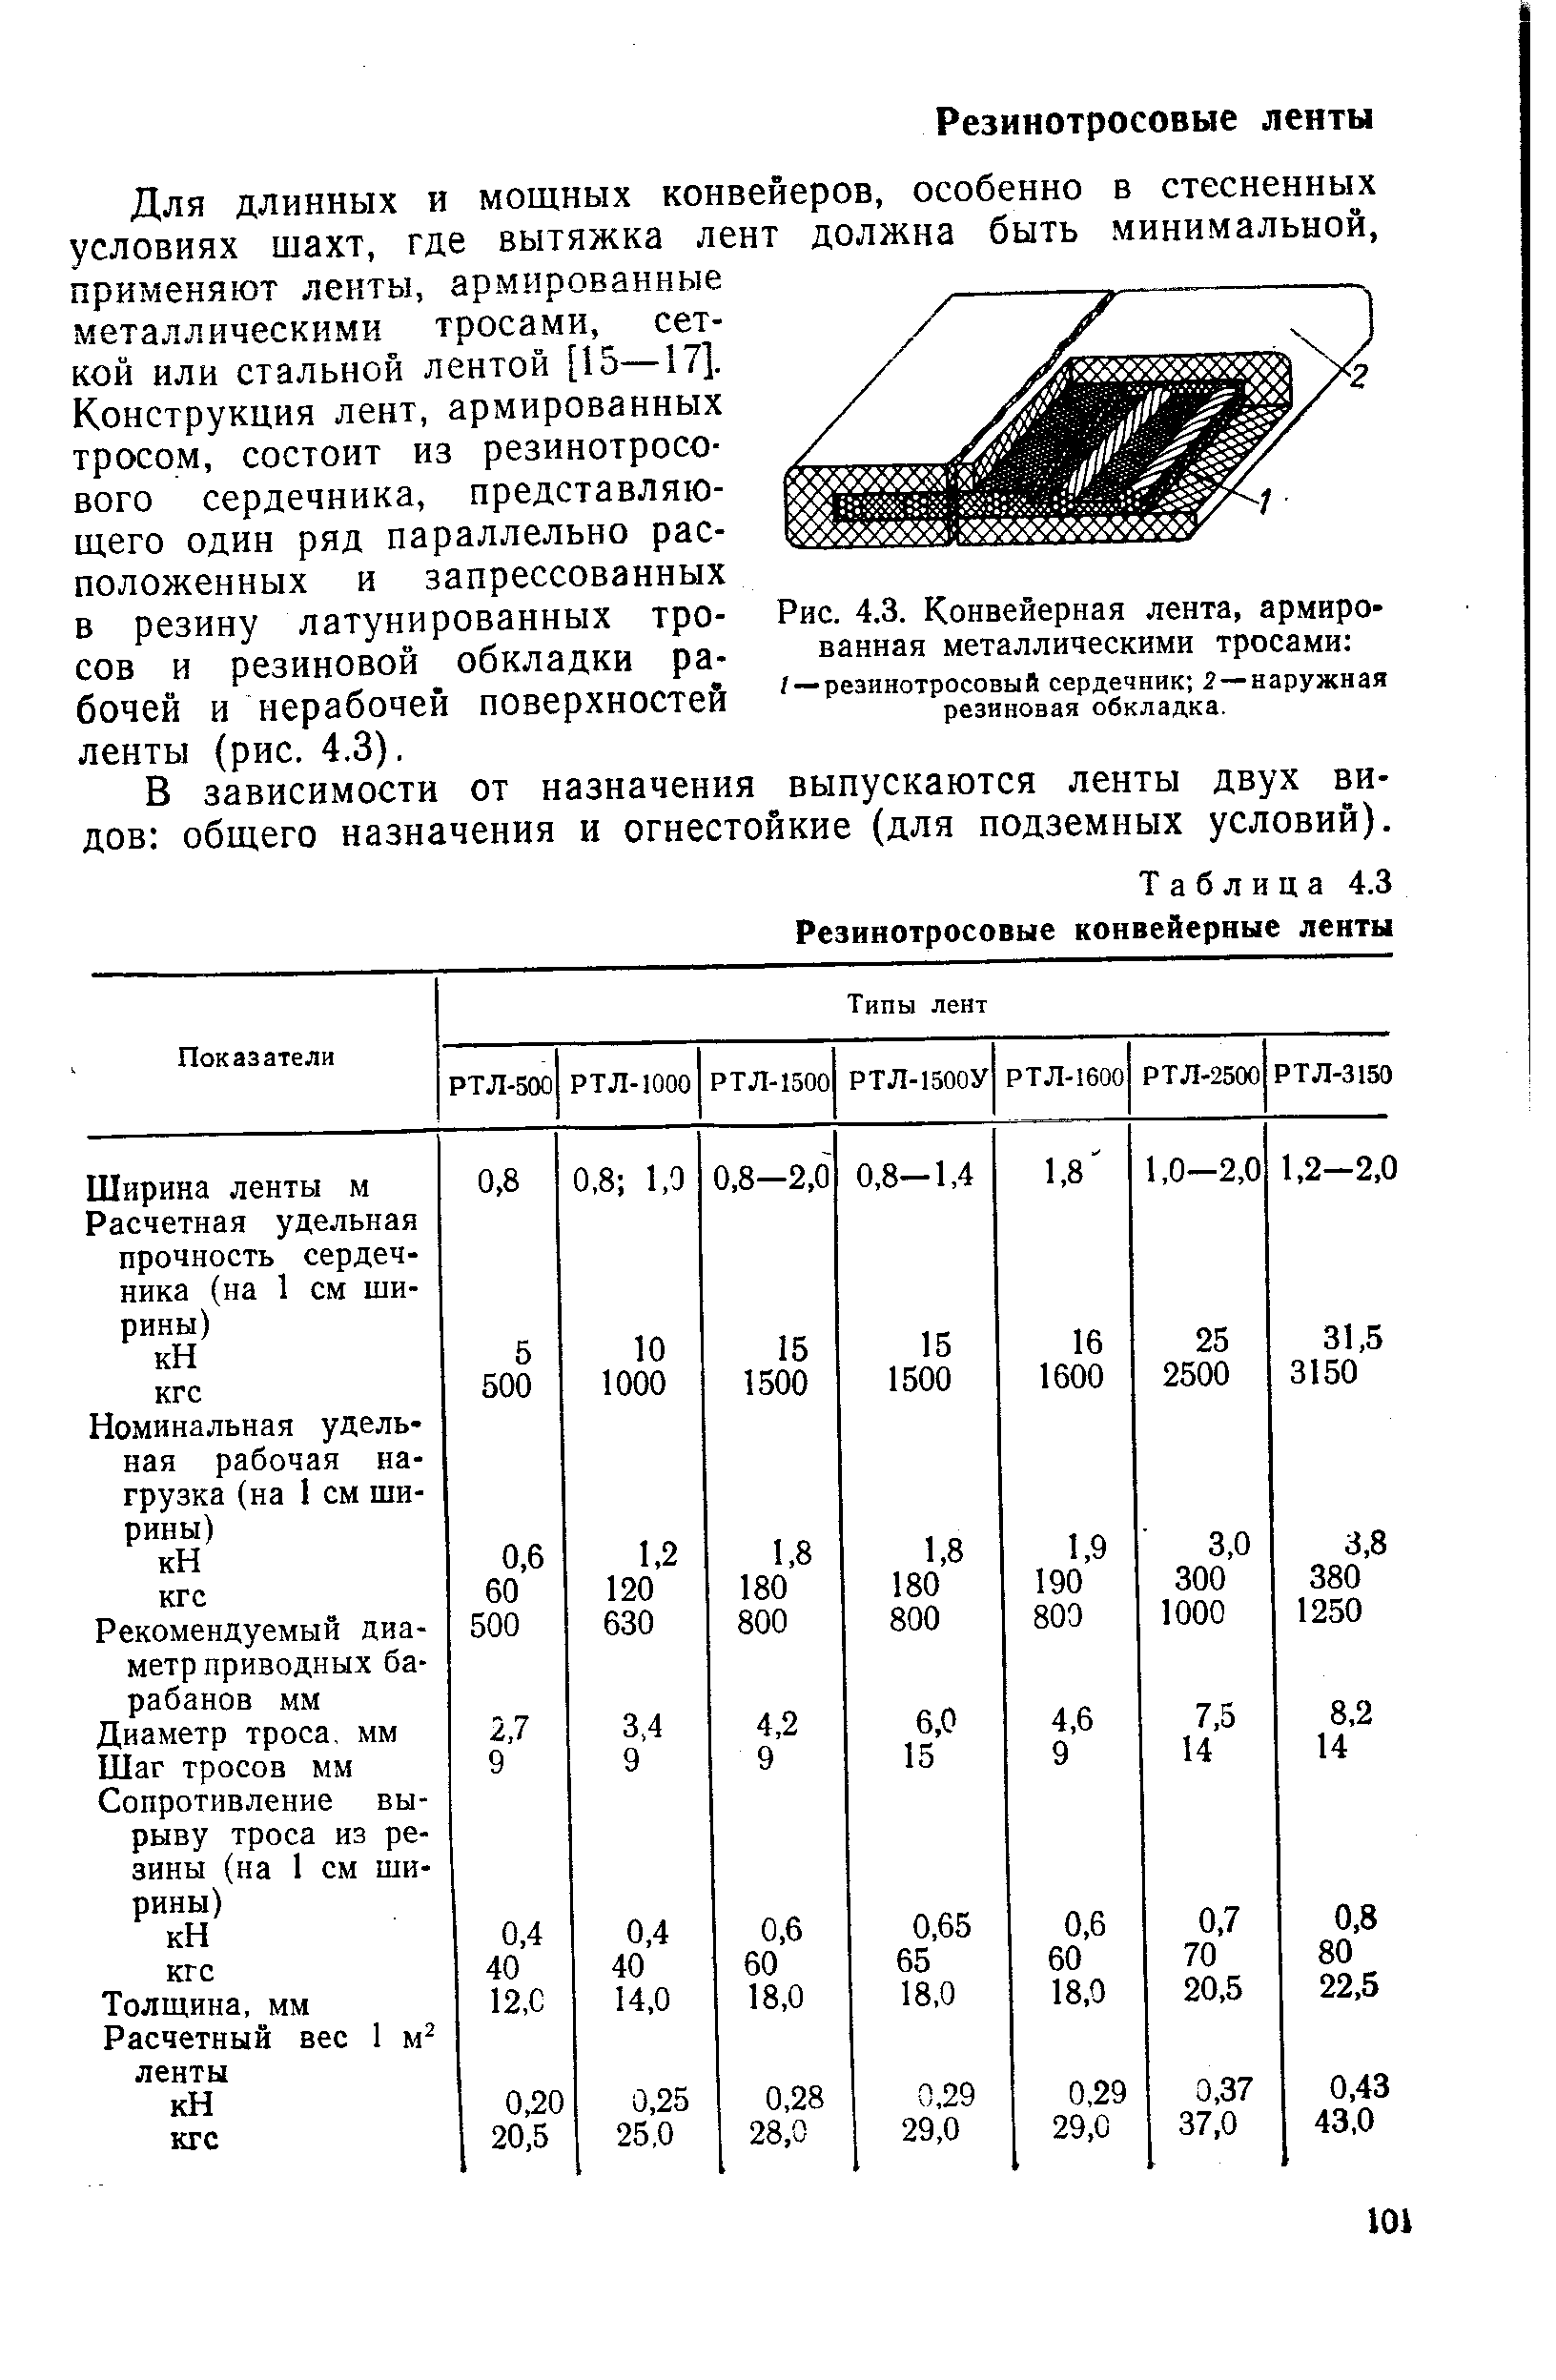 Таблица 4.3 Резинотросовые конвейерные ленты
